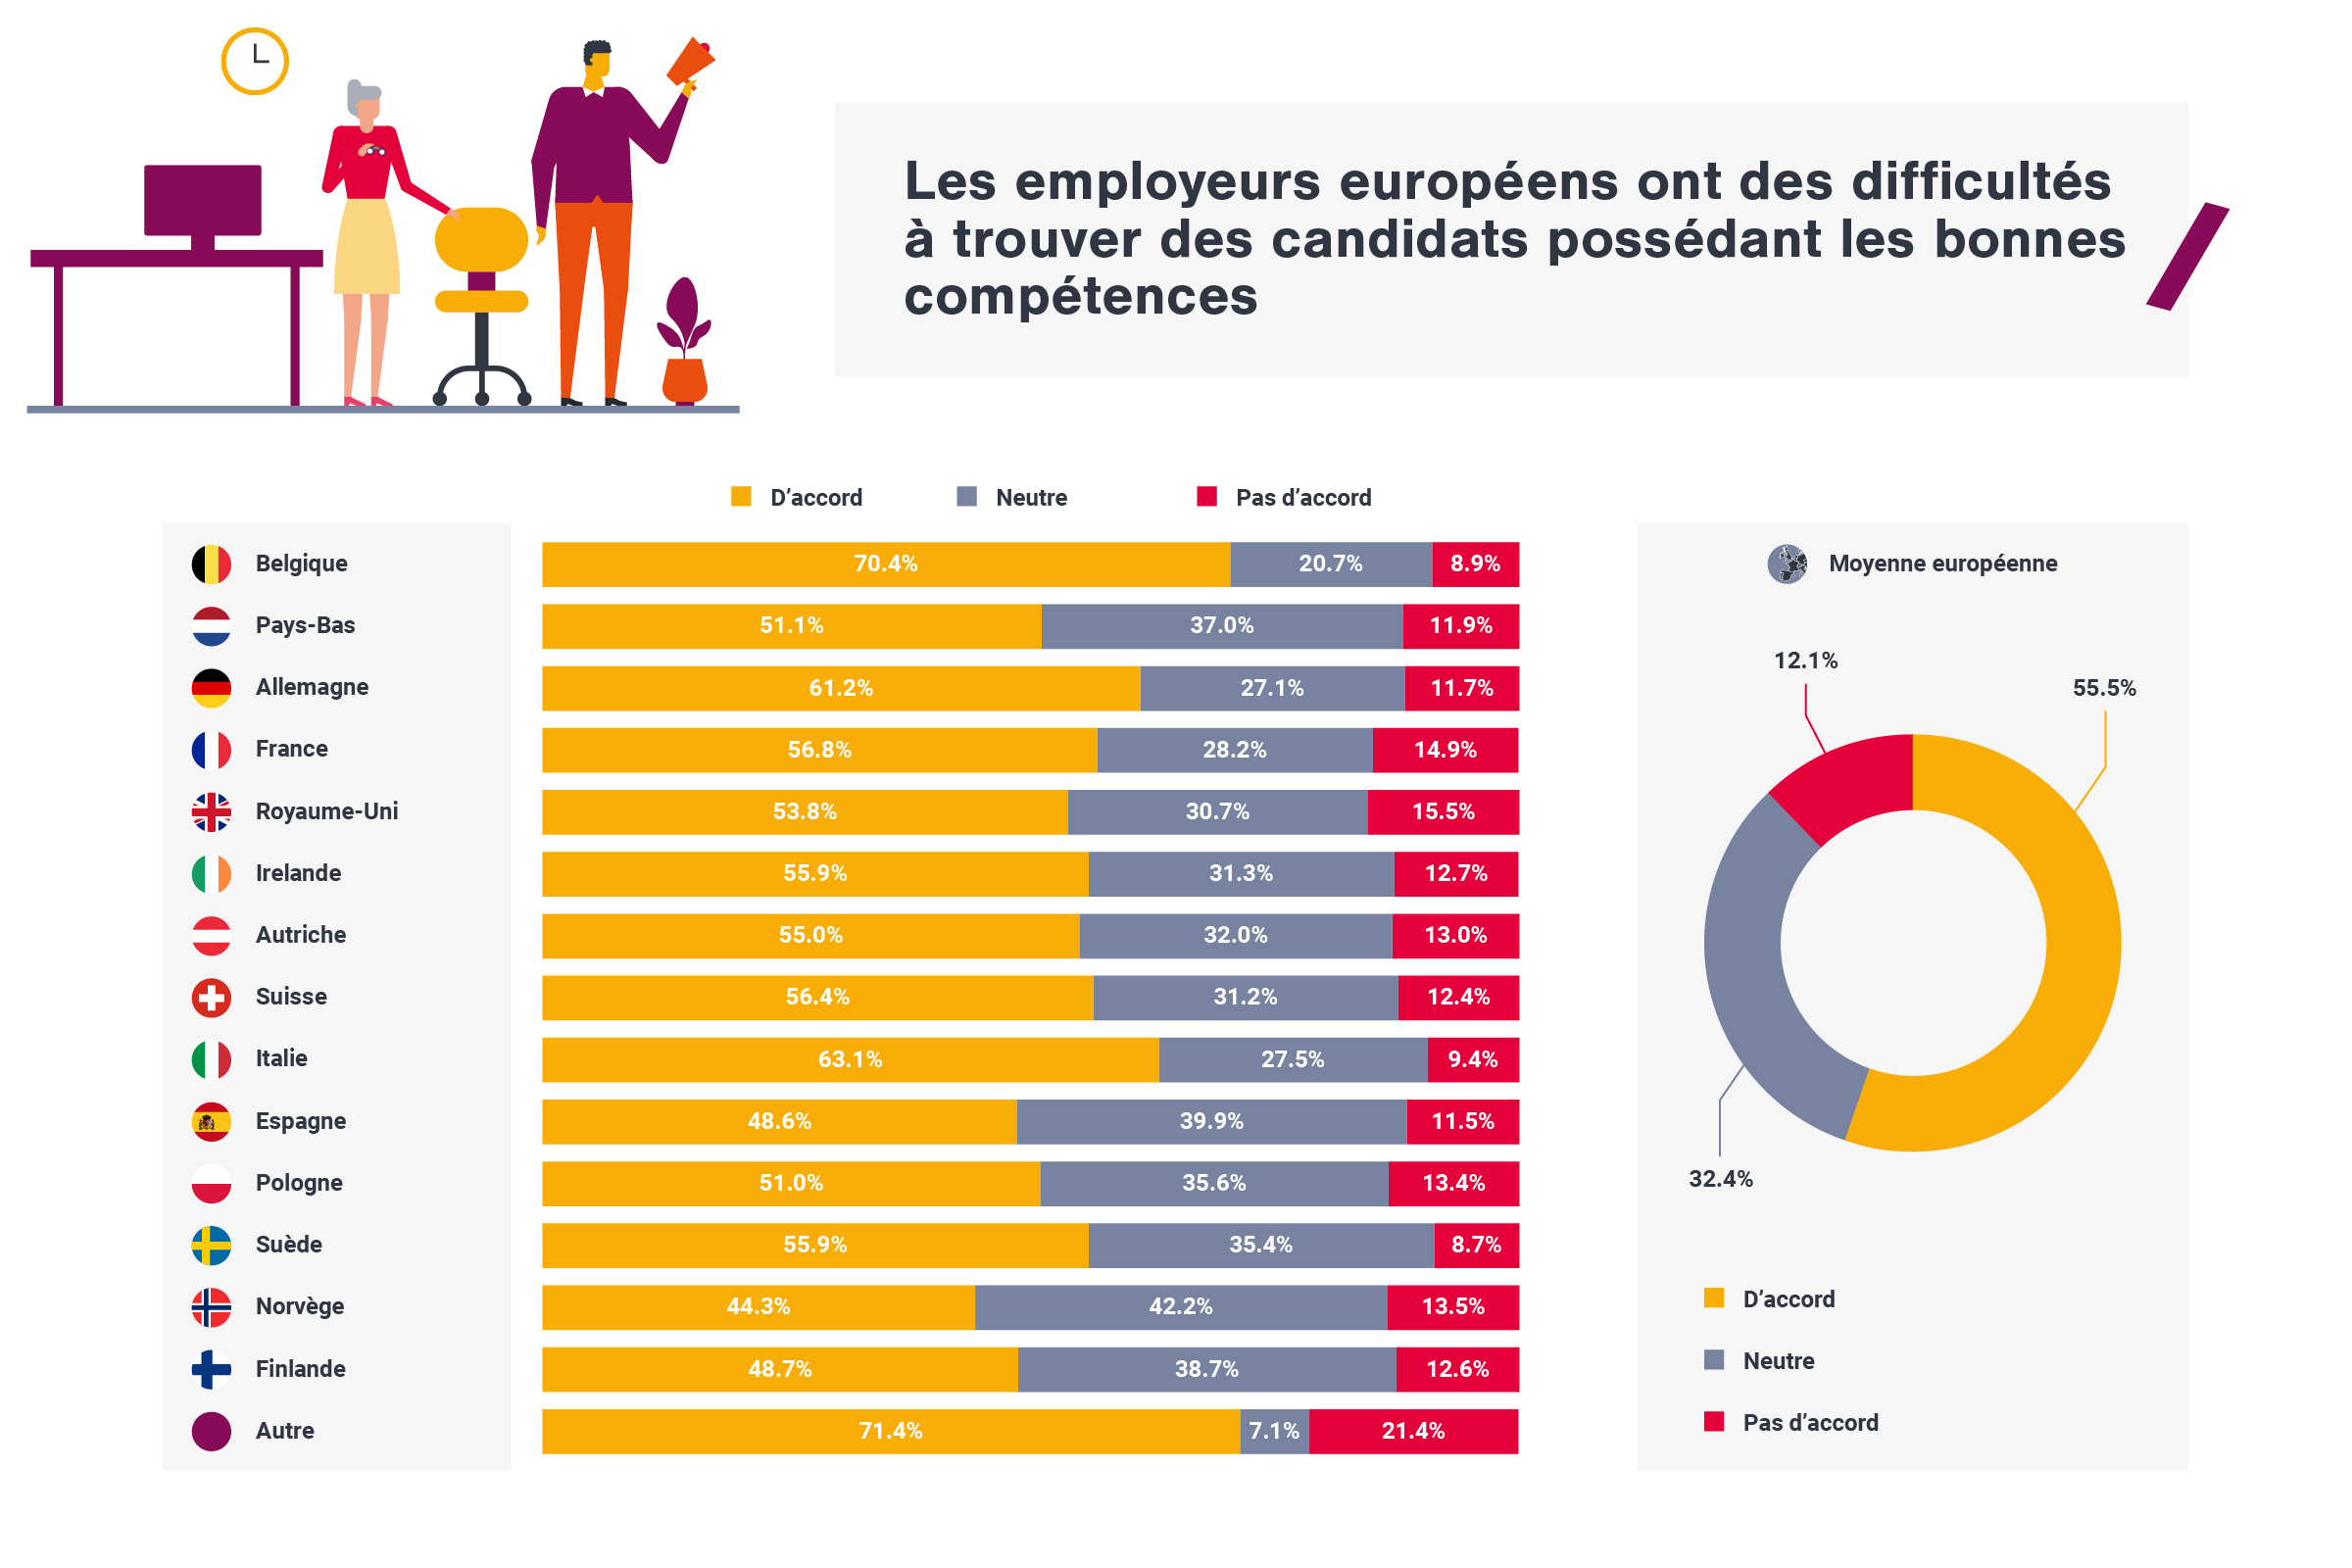 Les employeurs européens ont des diffcultés à trouver des candidats